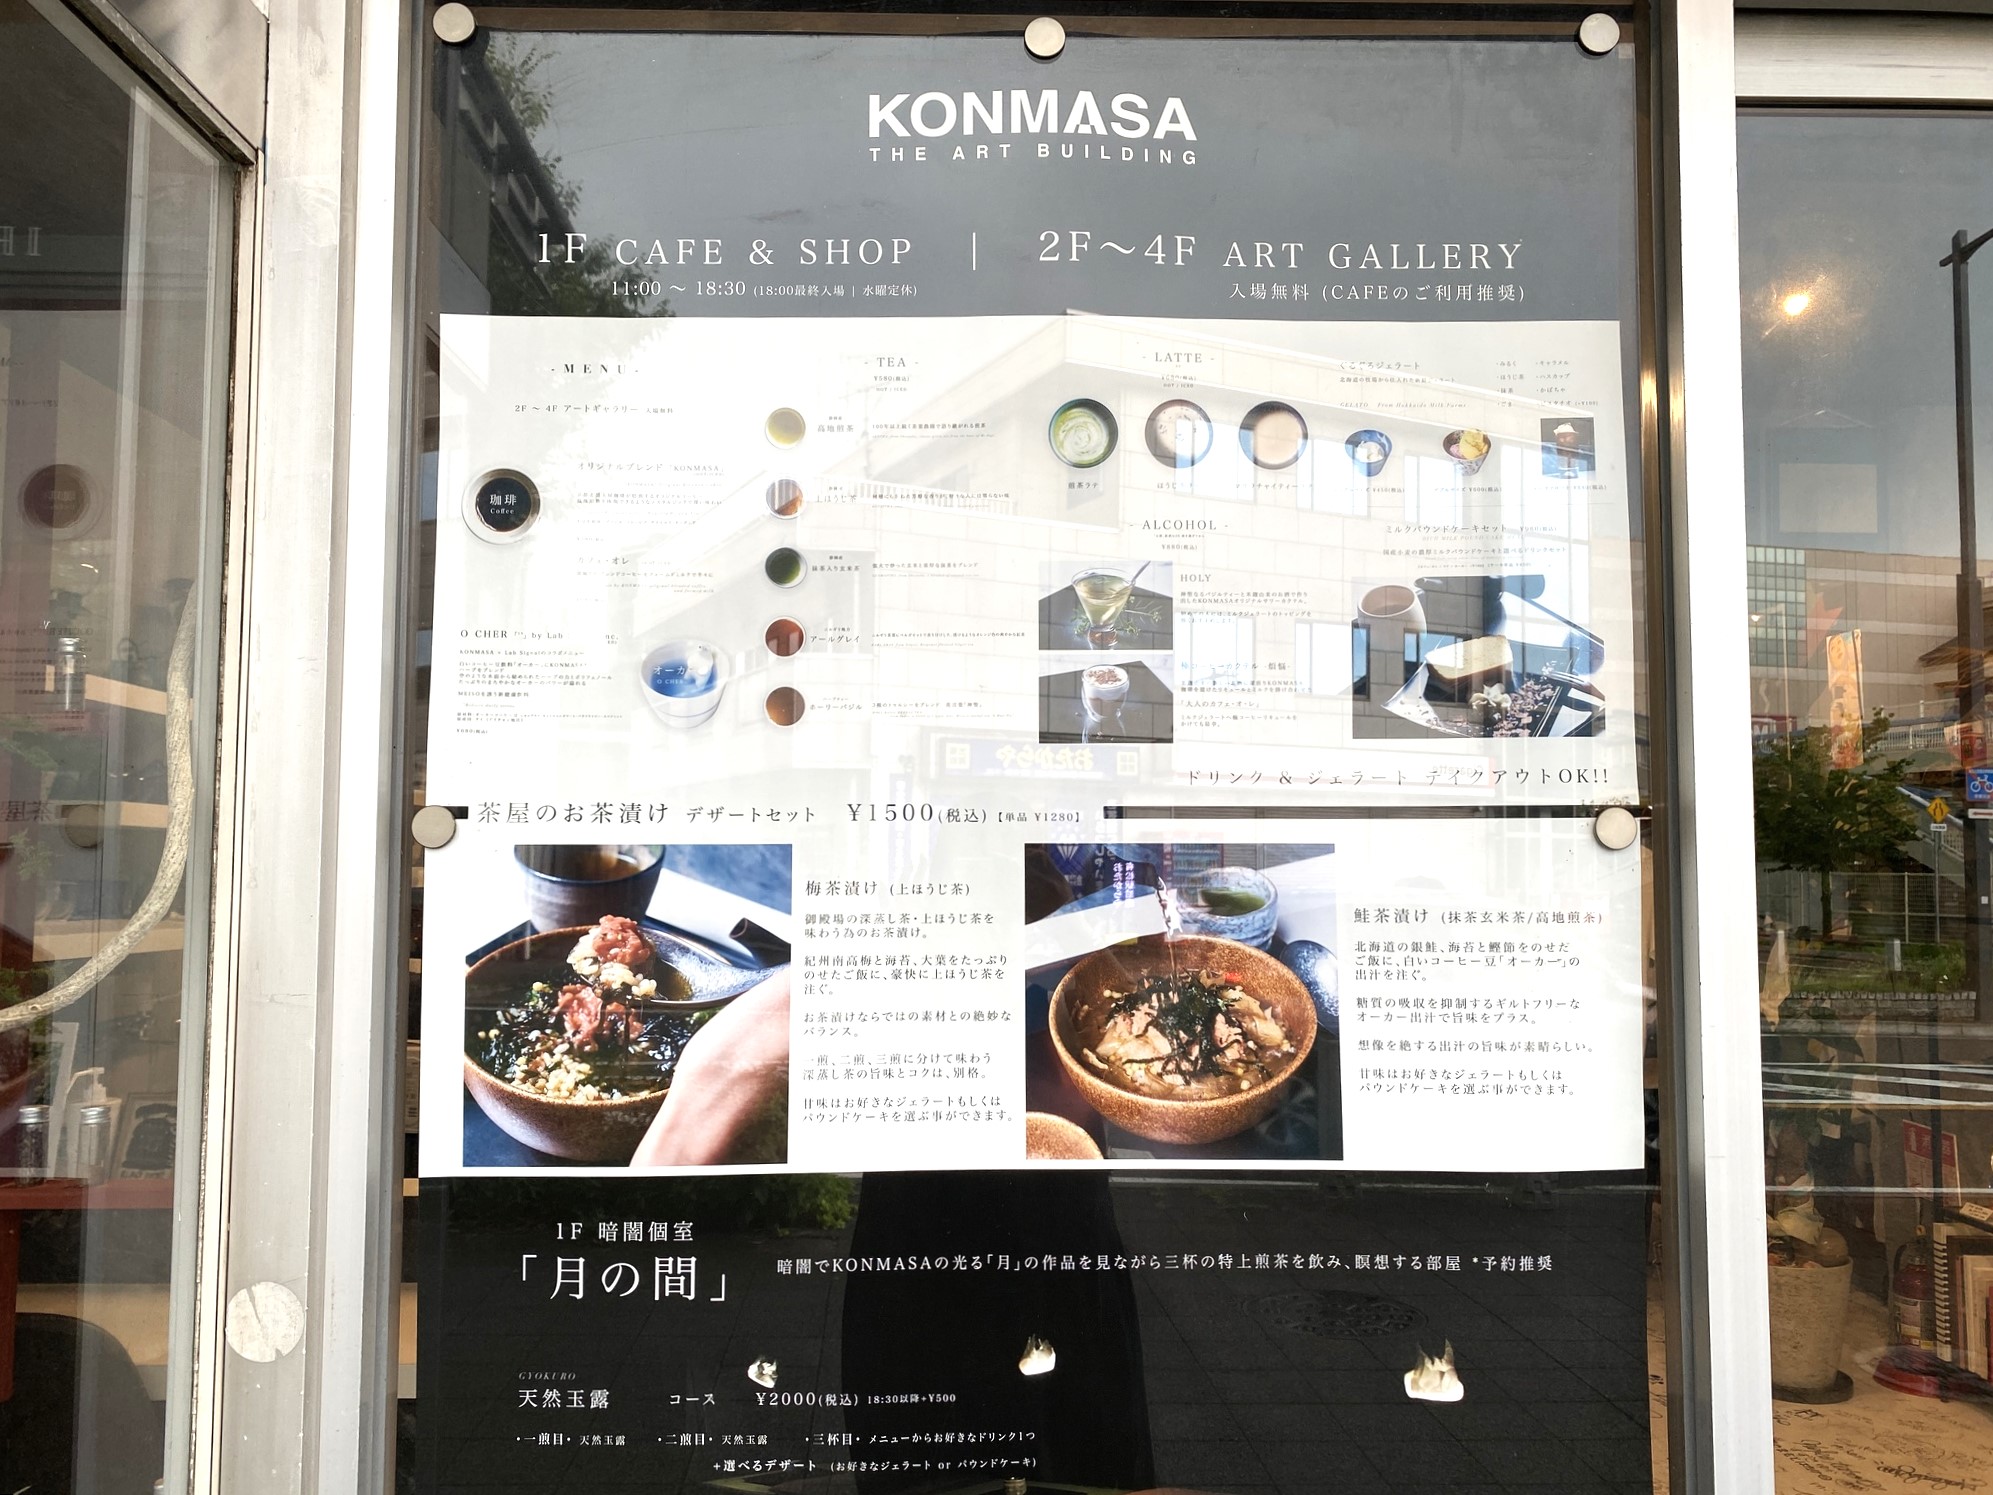 999日間のアートとの出会い。有松のカフェ「KONMASA」は期間限定の